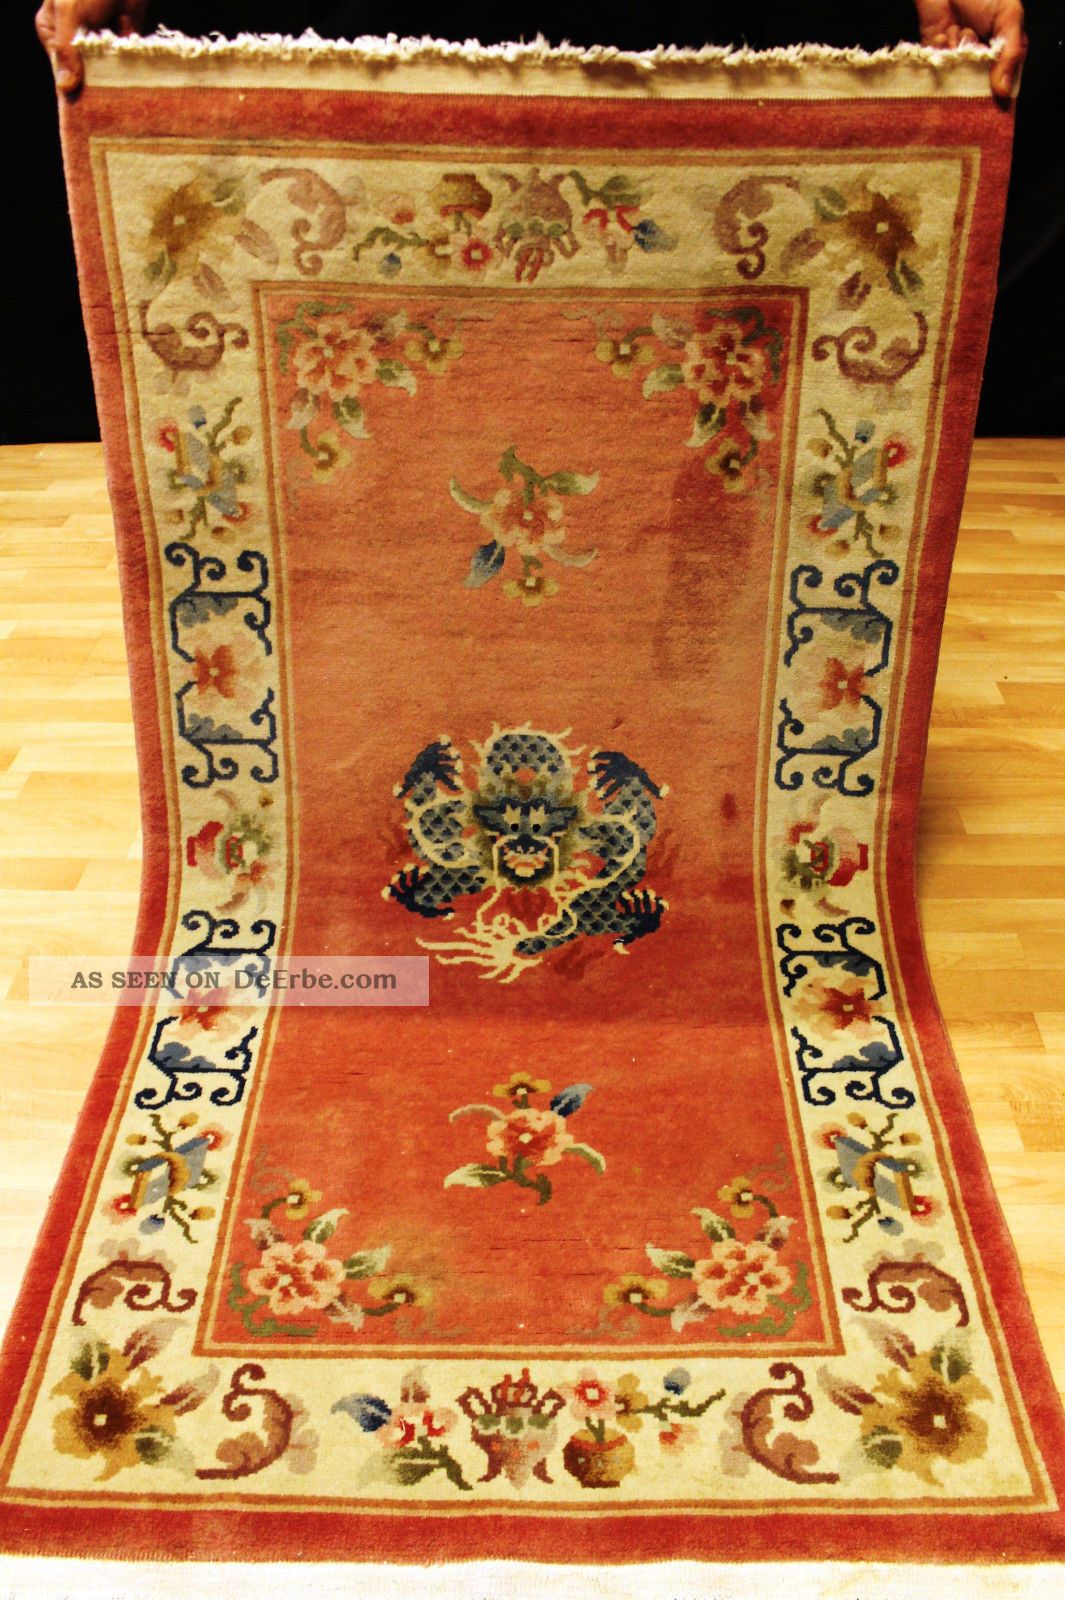 Schöner Drachen Art Deco Chinateppich 165x90cm Orient 3657 Tapis Carpet Dragon Teppiche & Flachgewebe Bild